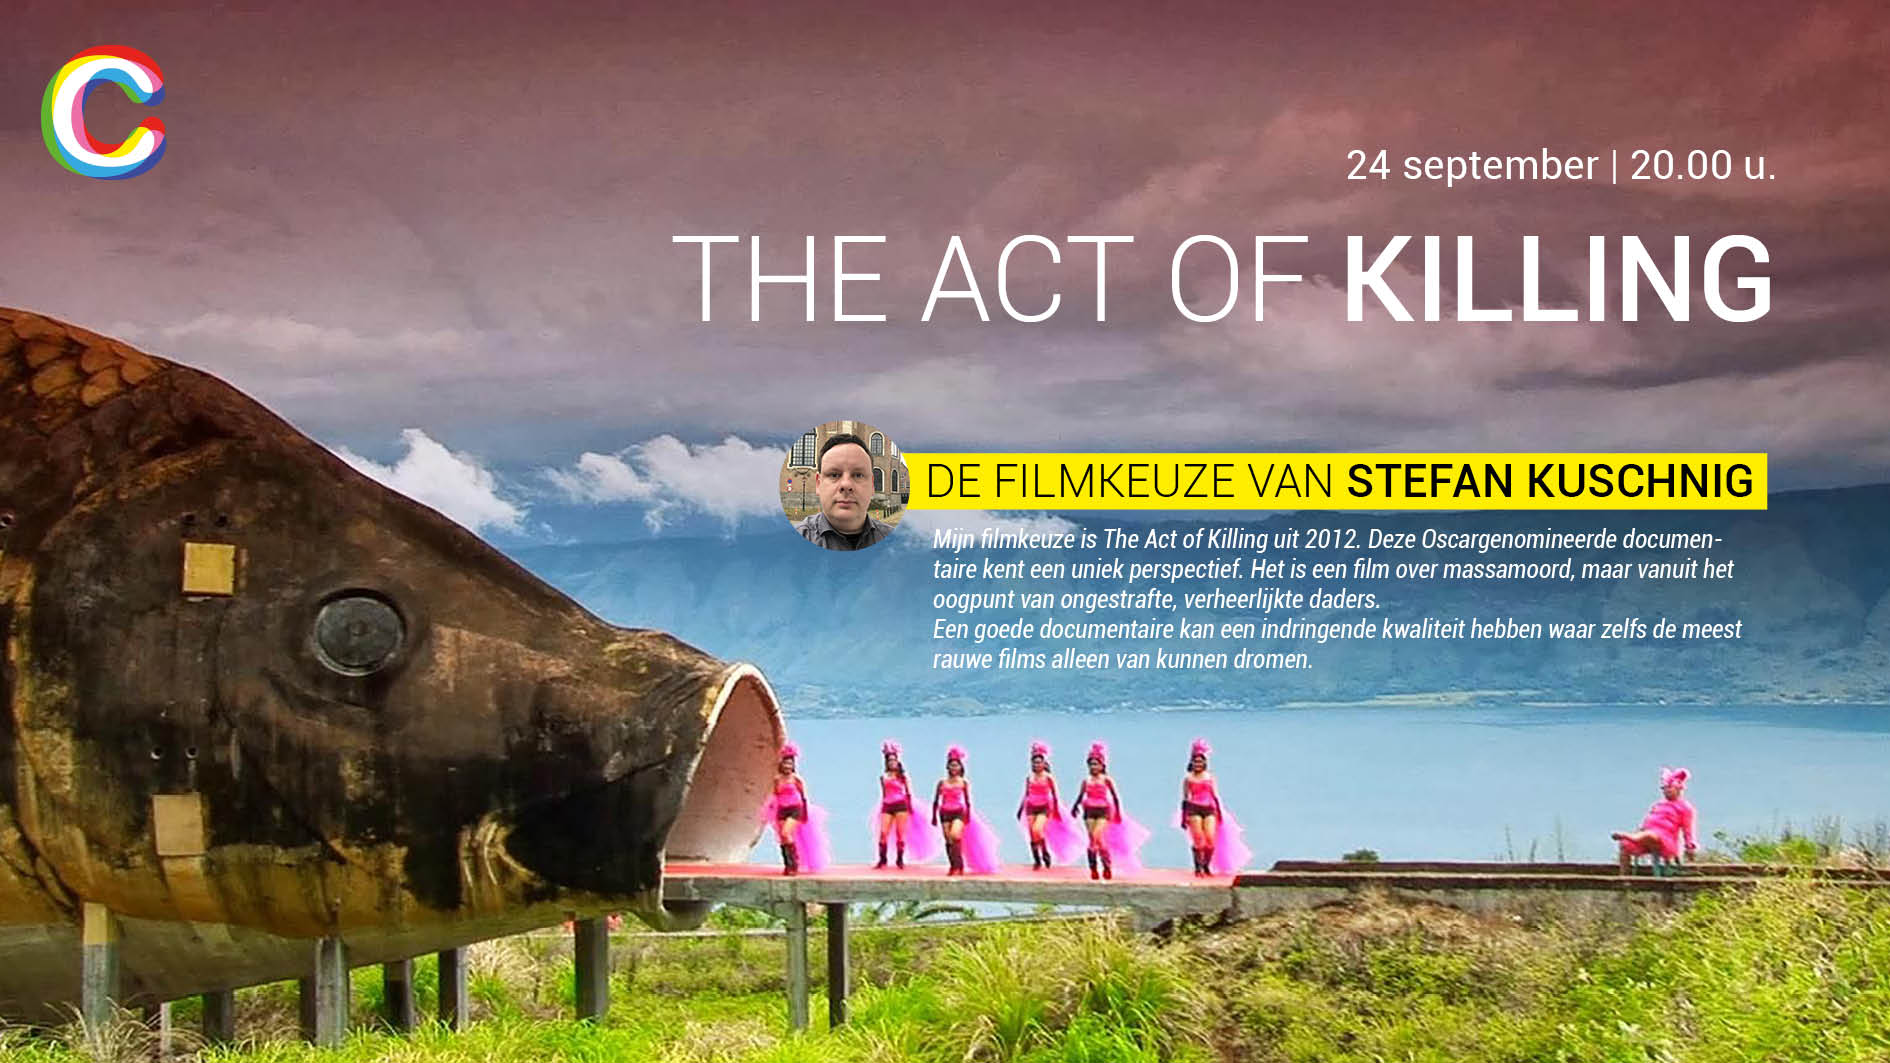 De filmkeuze van Stefan Kuschnig: The Act of Killing